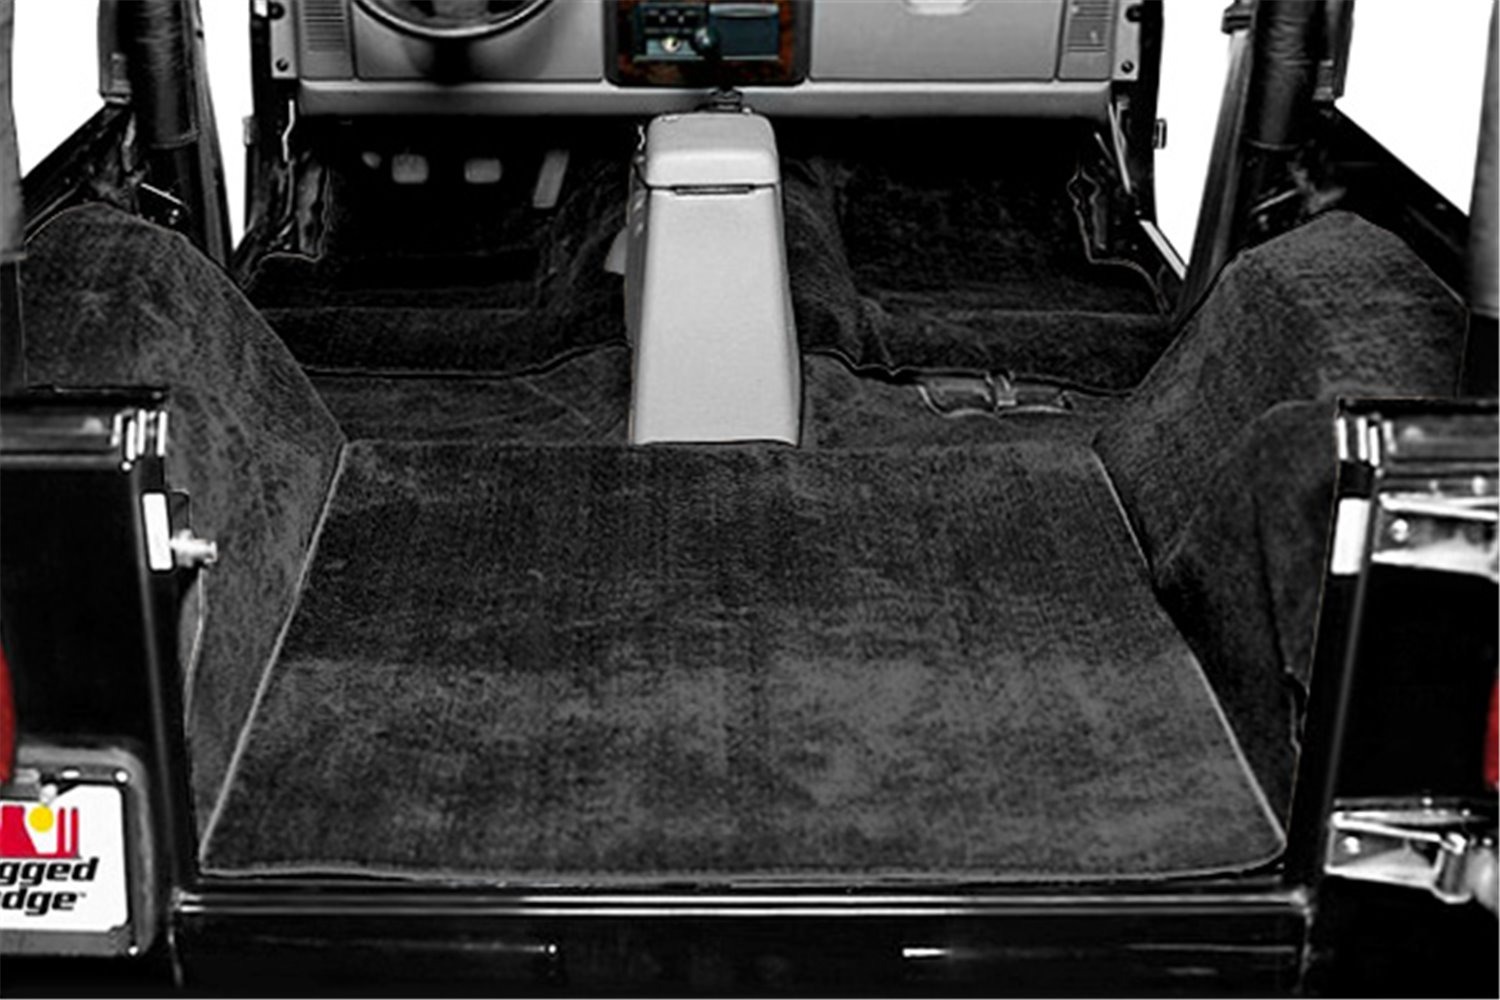 Deluxe Carpet Kit, Black : 76-95 Jeep CJ/Wrangler YJ